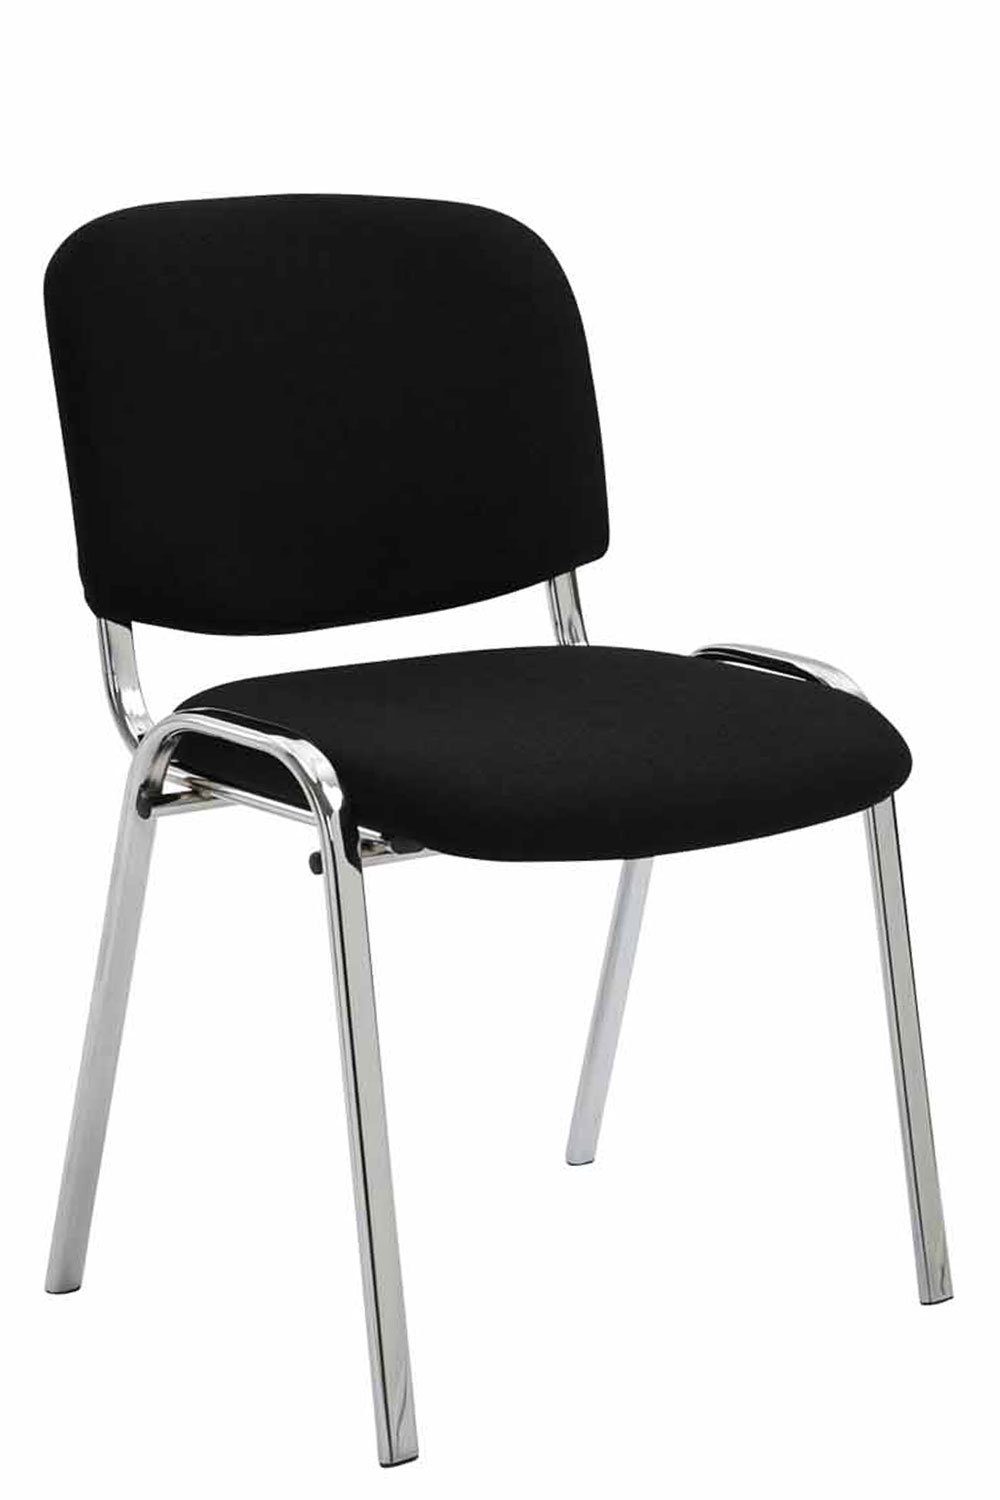 - Metall Besucherstuhl Sitzfläche: - - Gestell: - Warteraumstuhl chrom Messestuhl), hochwertiger Polsterung Stoff (Besprechungsstuhl Keen TPFLiving Konferenzstuhl mit schwarz